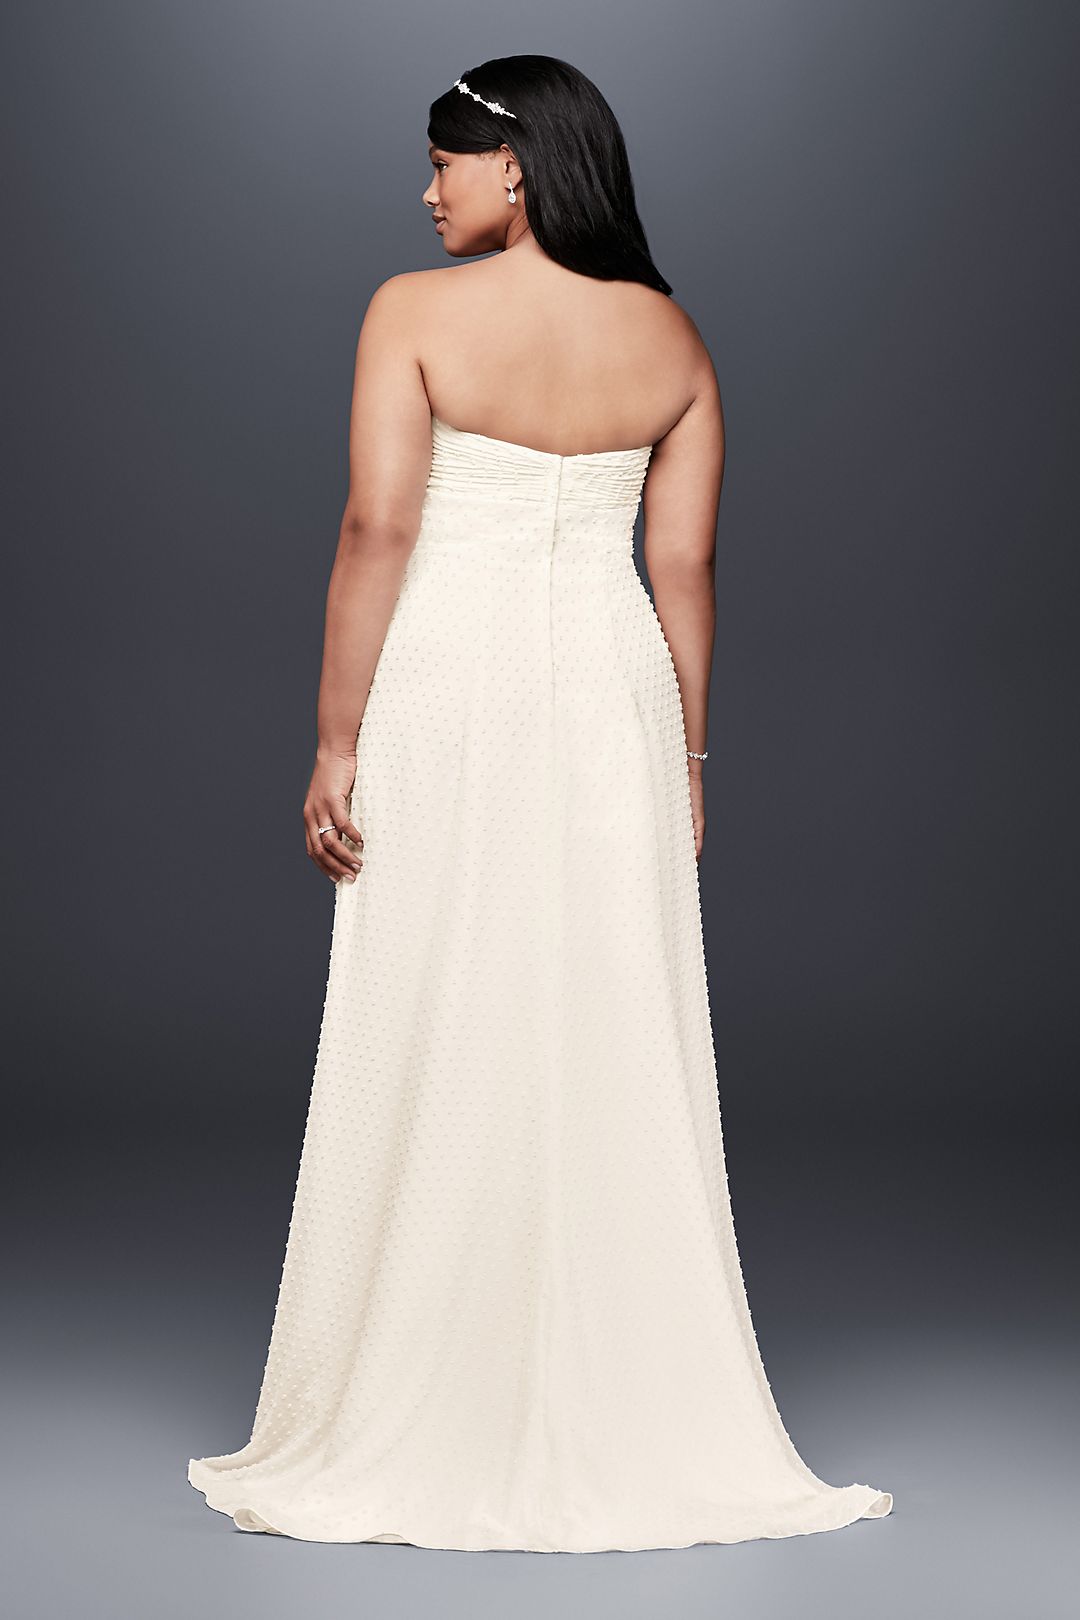 Dotted Chiffon Plus Size Wedding Dress Image 2